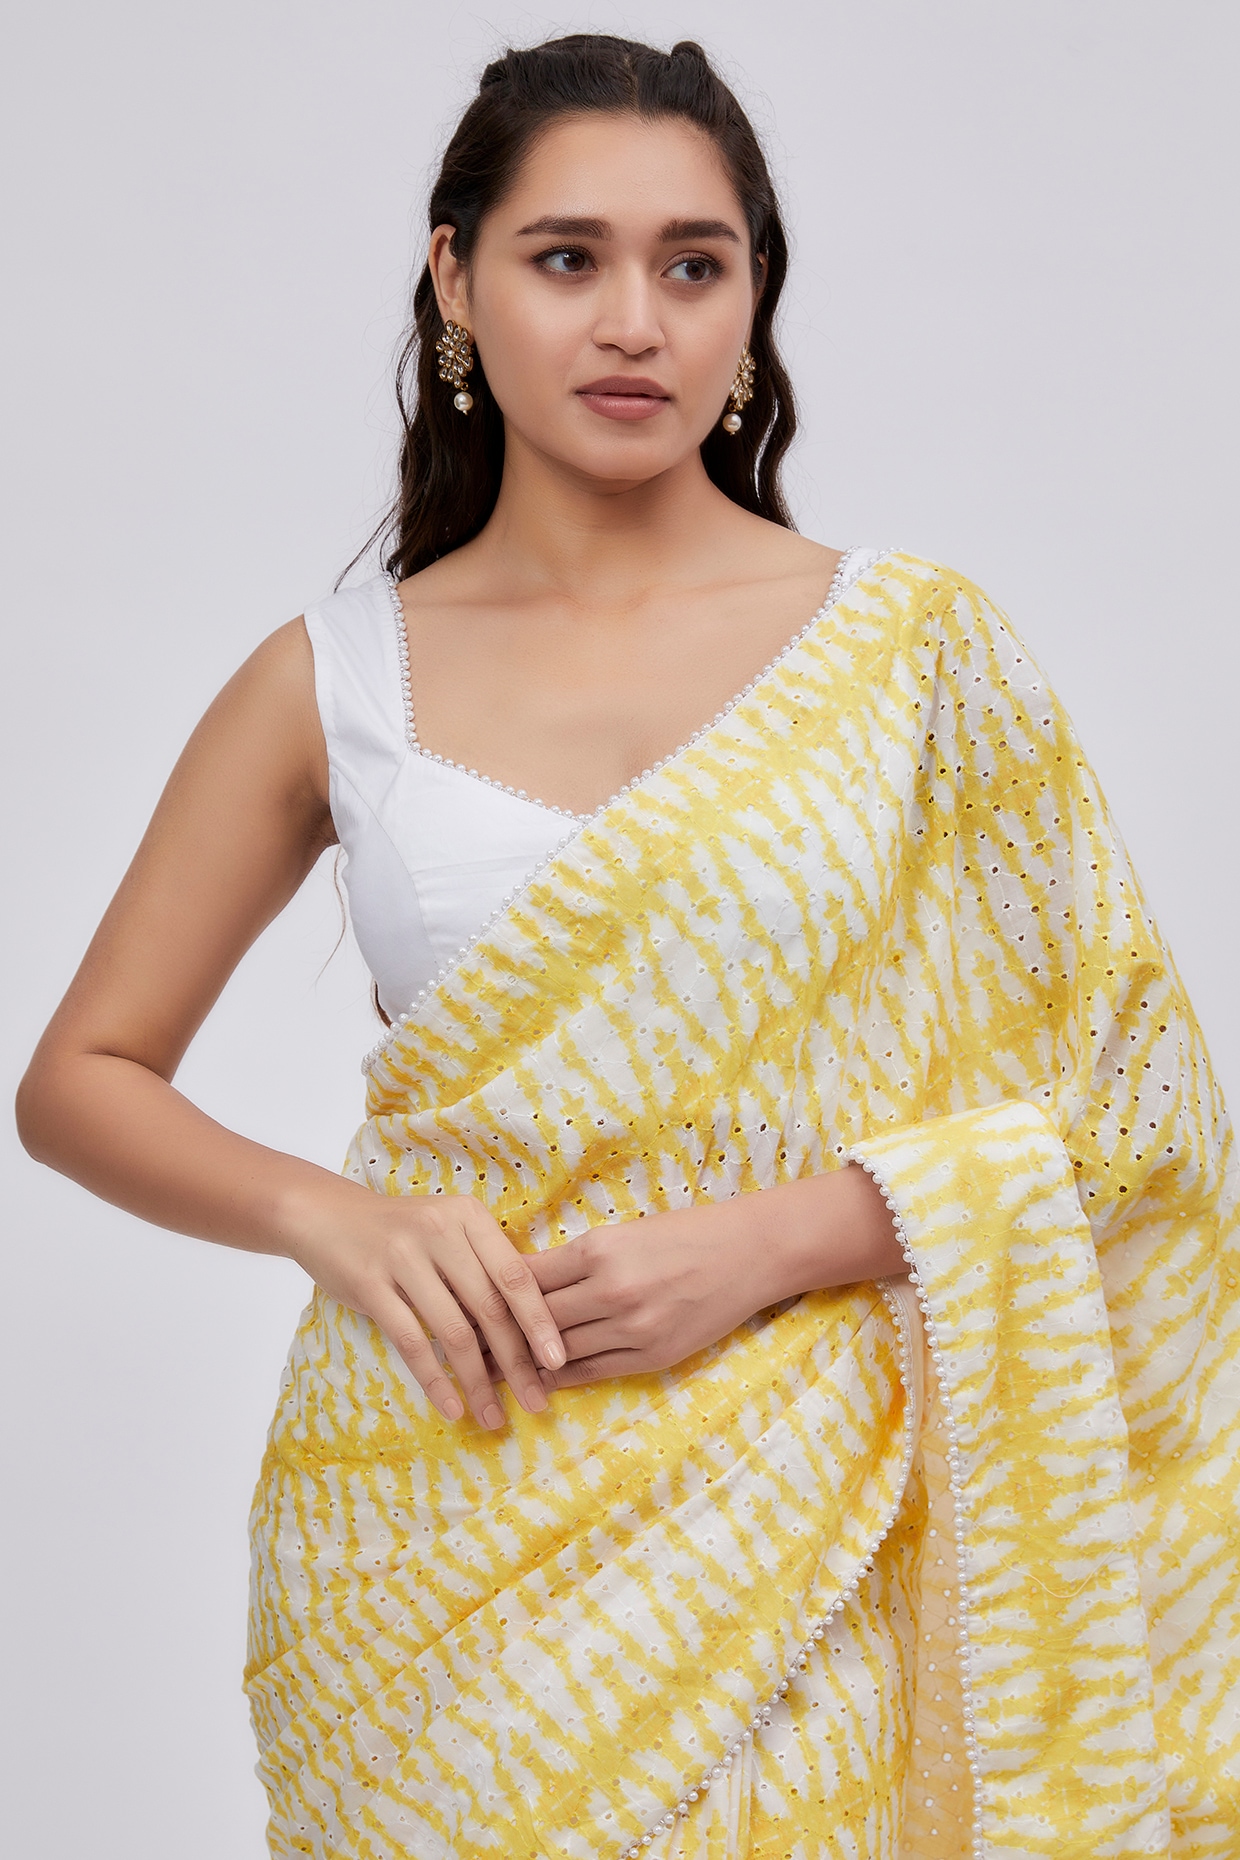 Genelia Deshmukh shines bright in a yellow plain saree!